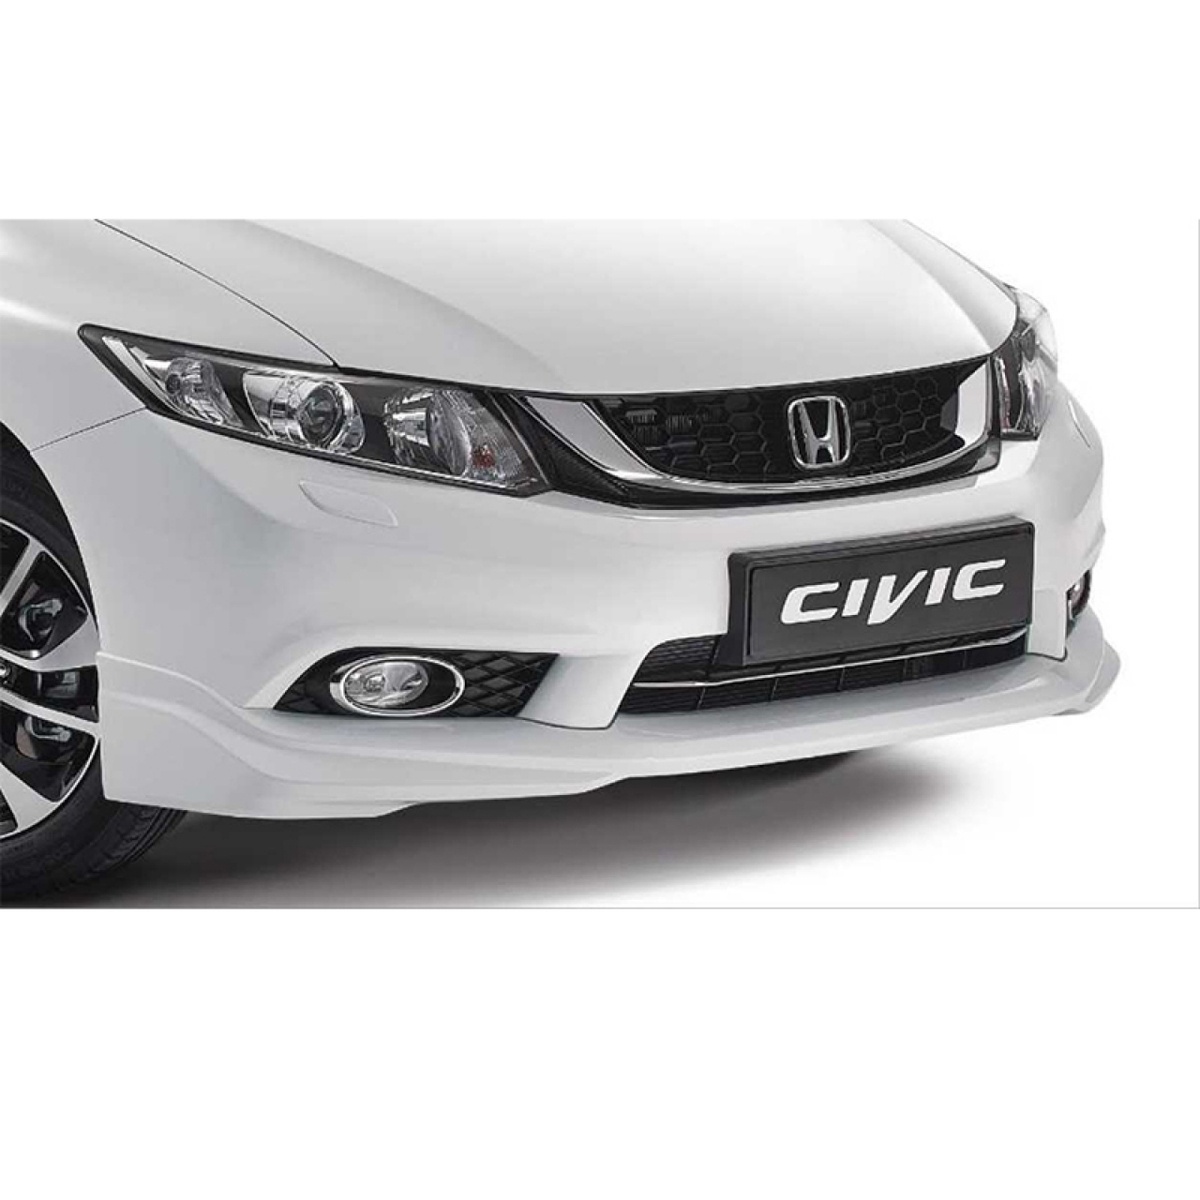 Honda Civic Fb7 2012-2015 Ön Tampon Eki Modulo Fiyat ve Modelleri